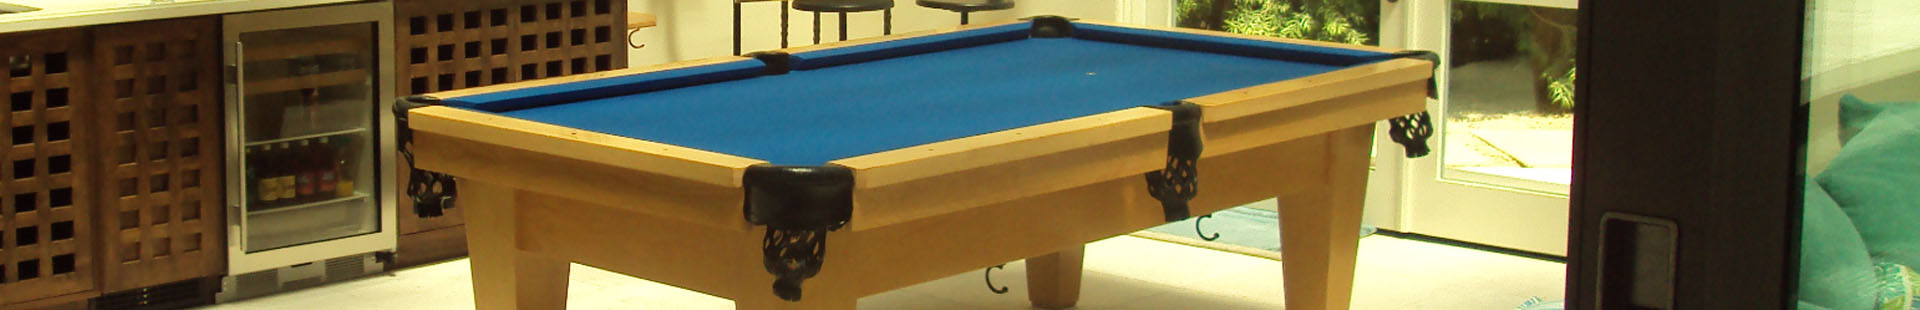 Miami Pool Table